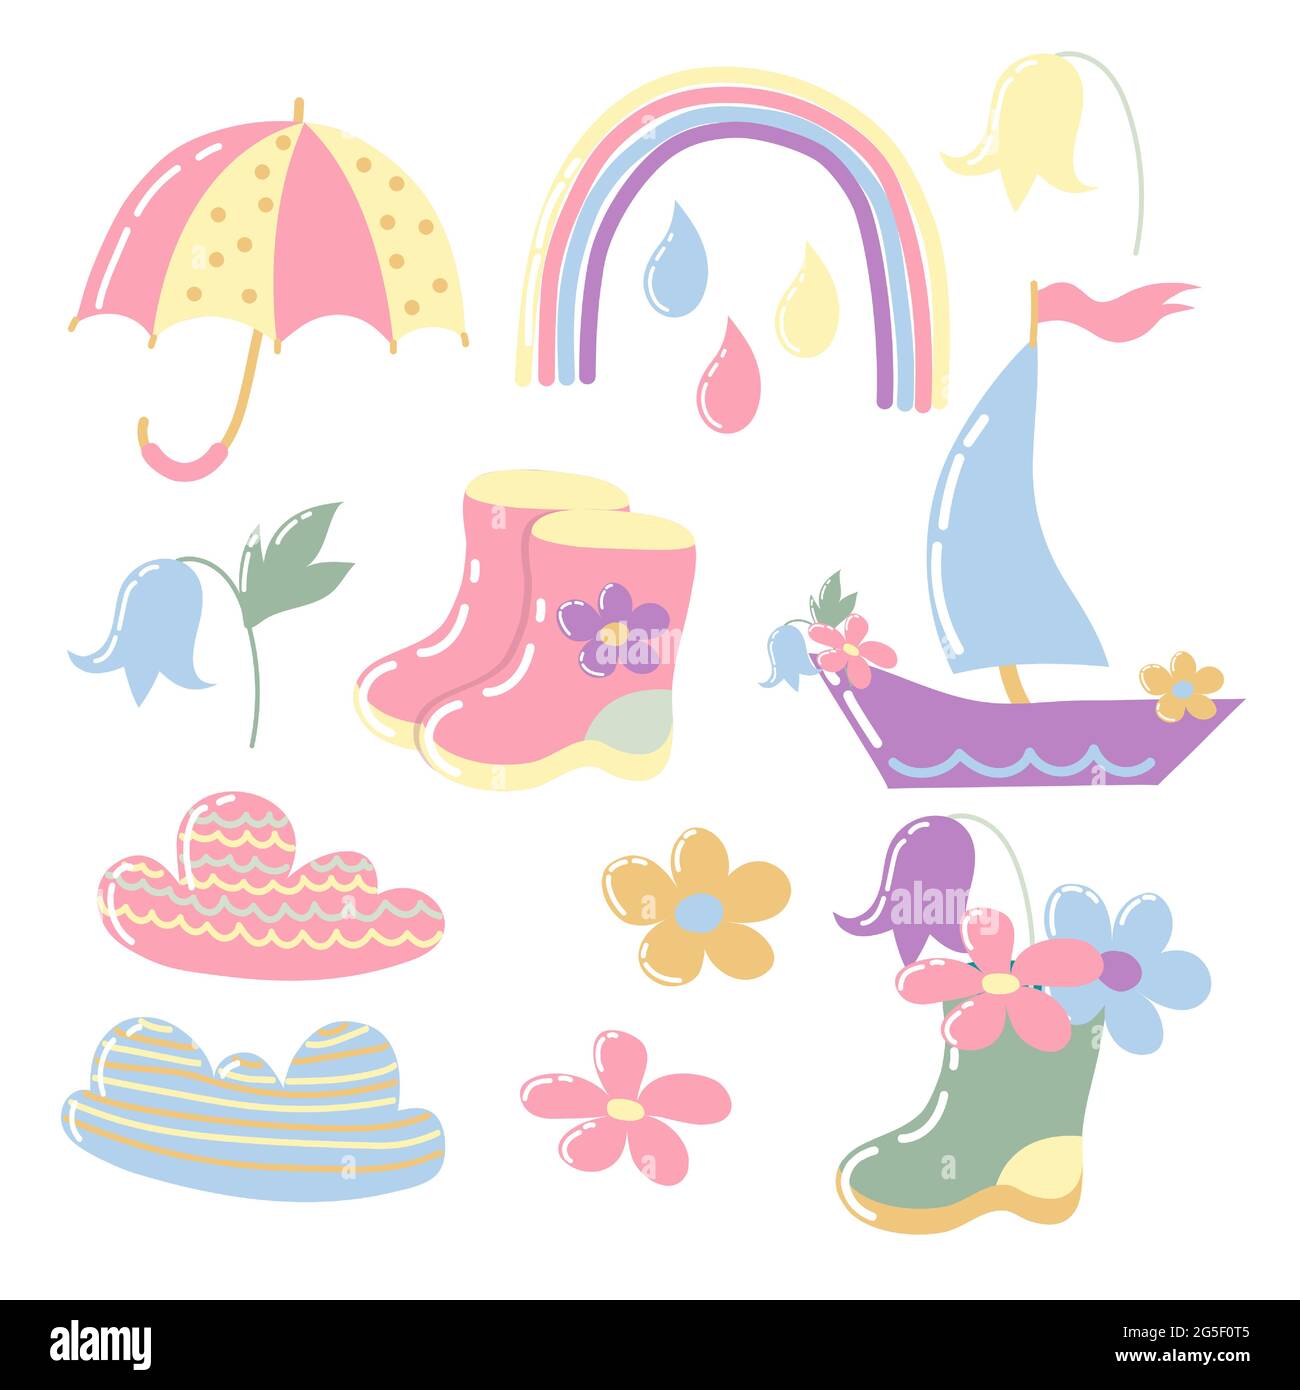 Set von Vektorgrafiken für das Design von Babyprodukten. Designelemente in flachem Stil. Helle Cartoon-Zeichnungen. Stiefel, Blumen, Regenbogen, Wolken Stock Vektor